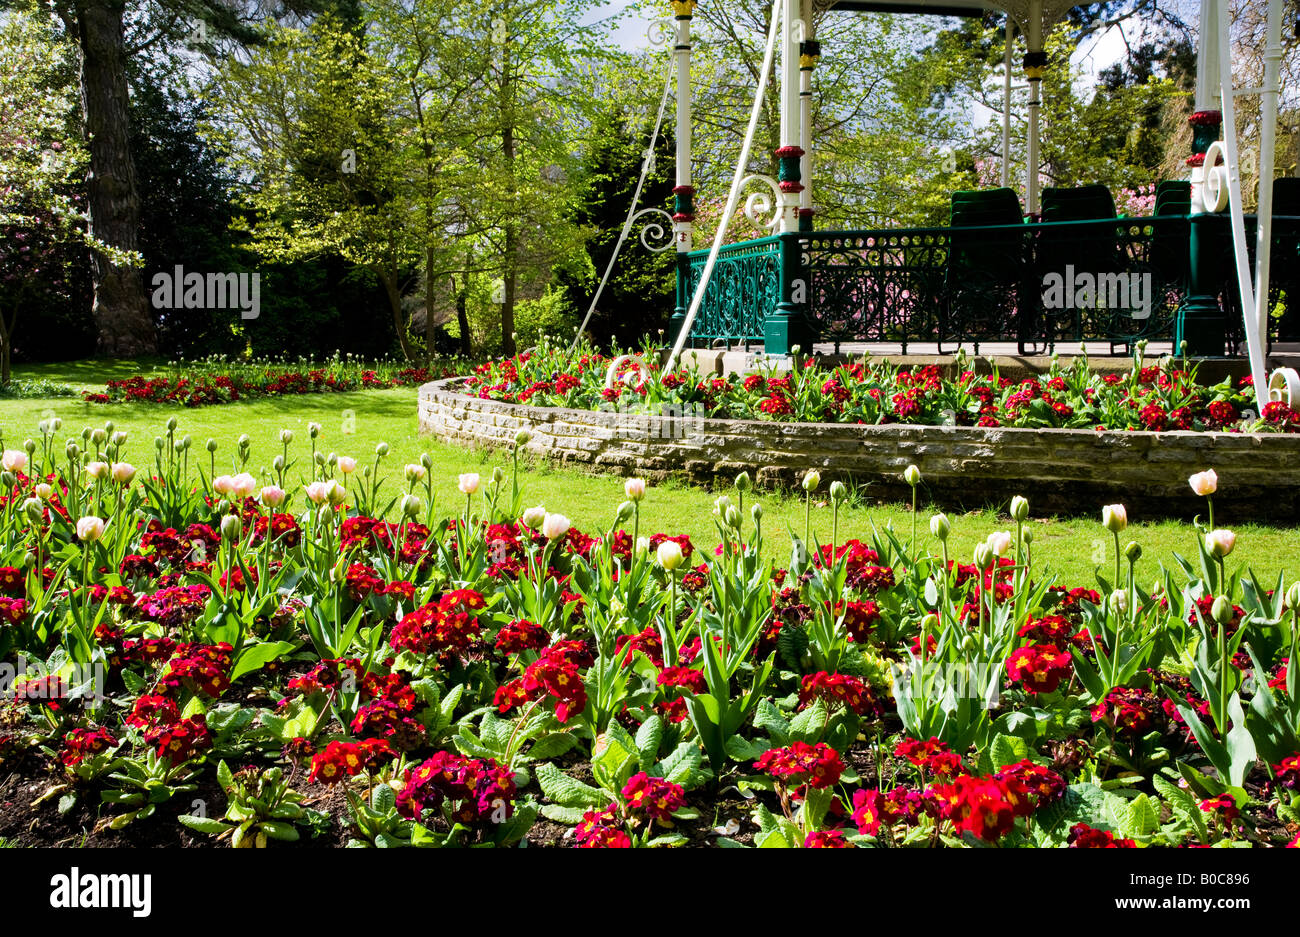 La molla aiuole di fiori di tulipani e primulas rossa nella parte anteriore del Vittoriano bandstand presso la cittadina di giardini, Swindon, Wiltshire, Regno Unito Foto Stock